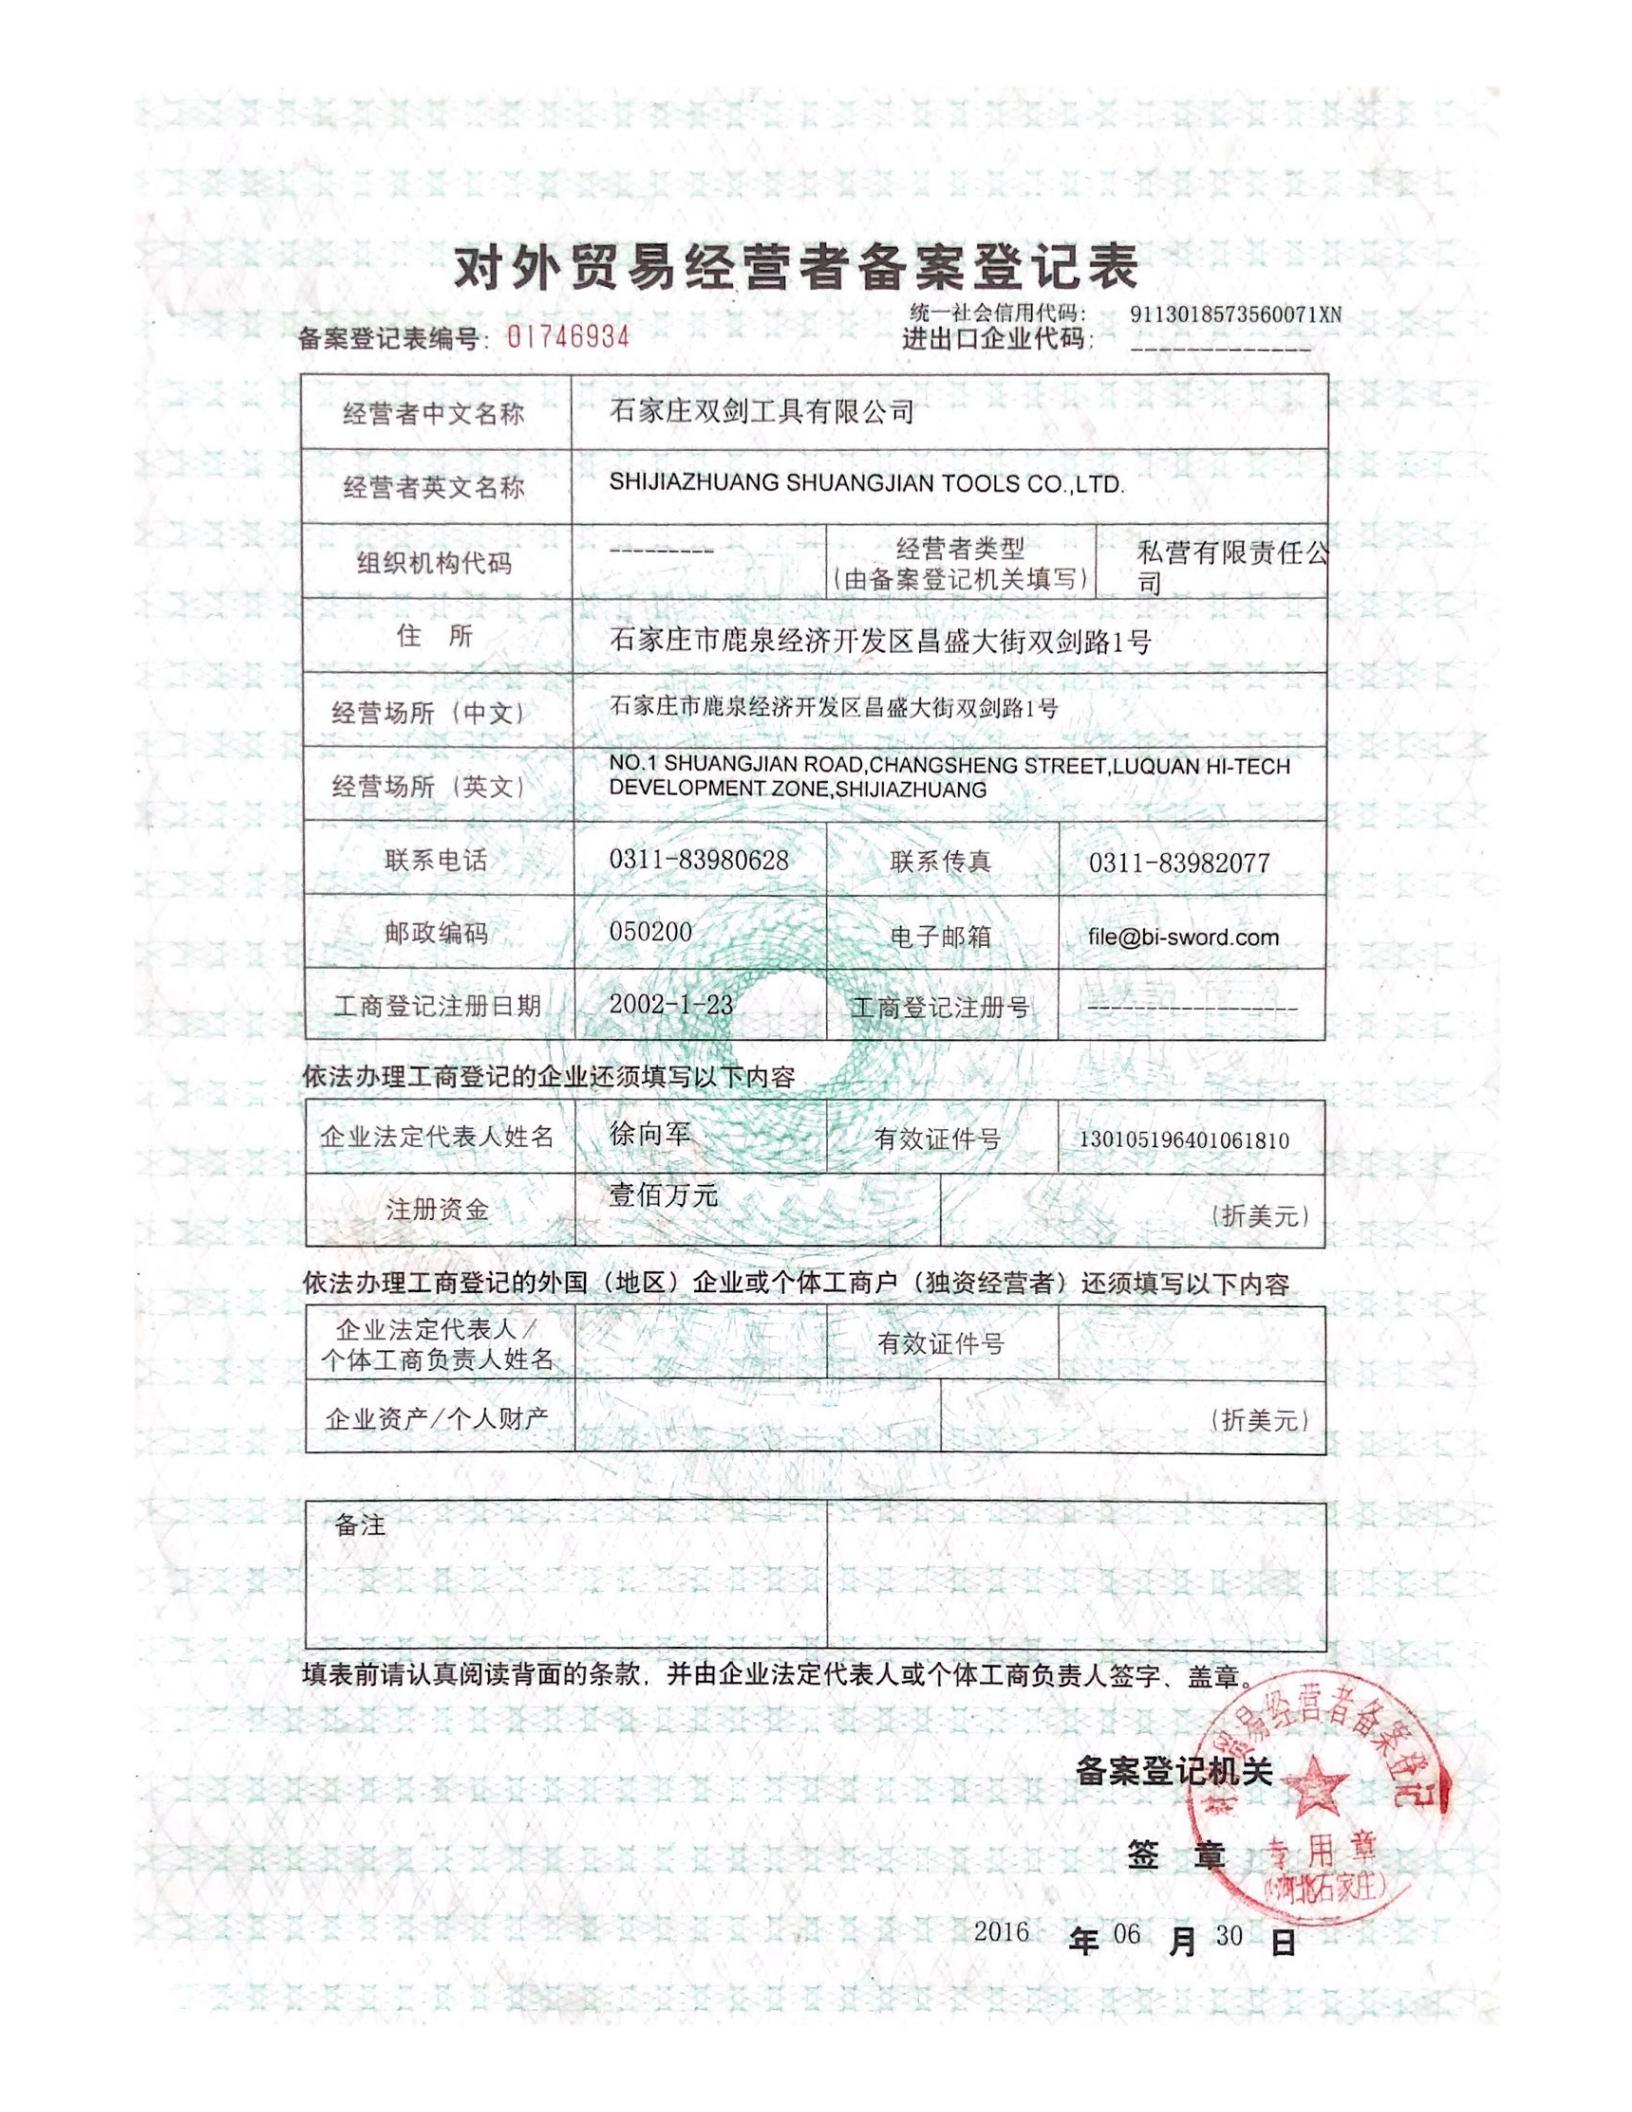 Formulario de registro de certificado de operador de comercio exterior